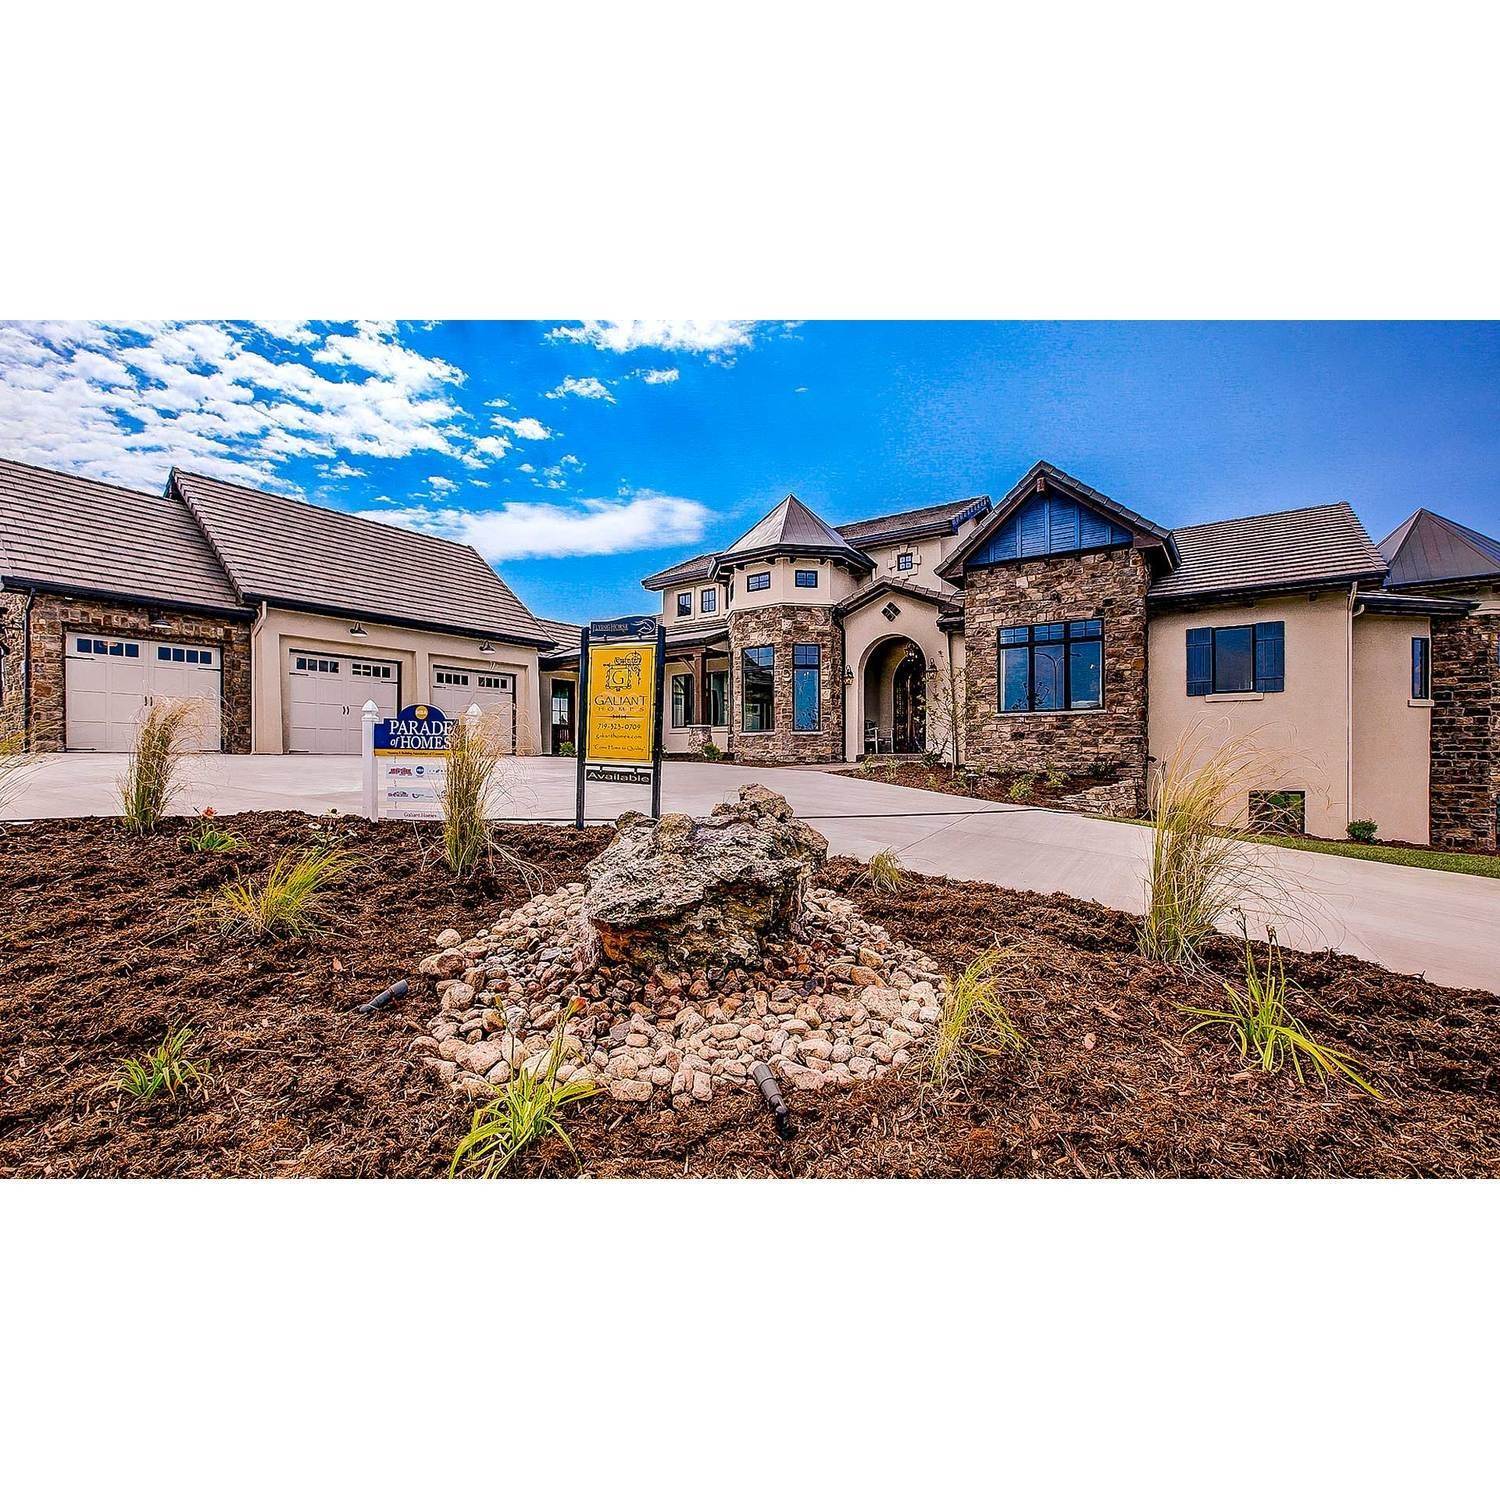 19. Galiant Homes edificio en 4783 Farmingdale Dr, Colorado Springs, CO 80918